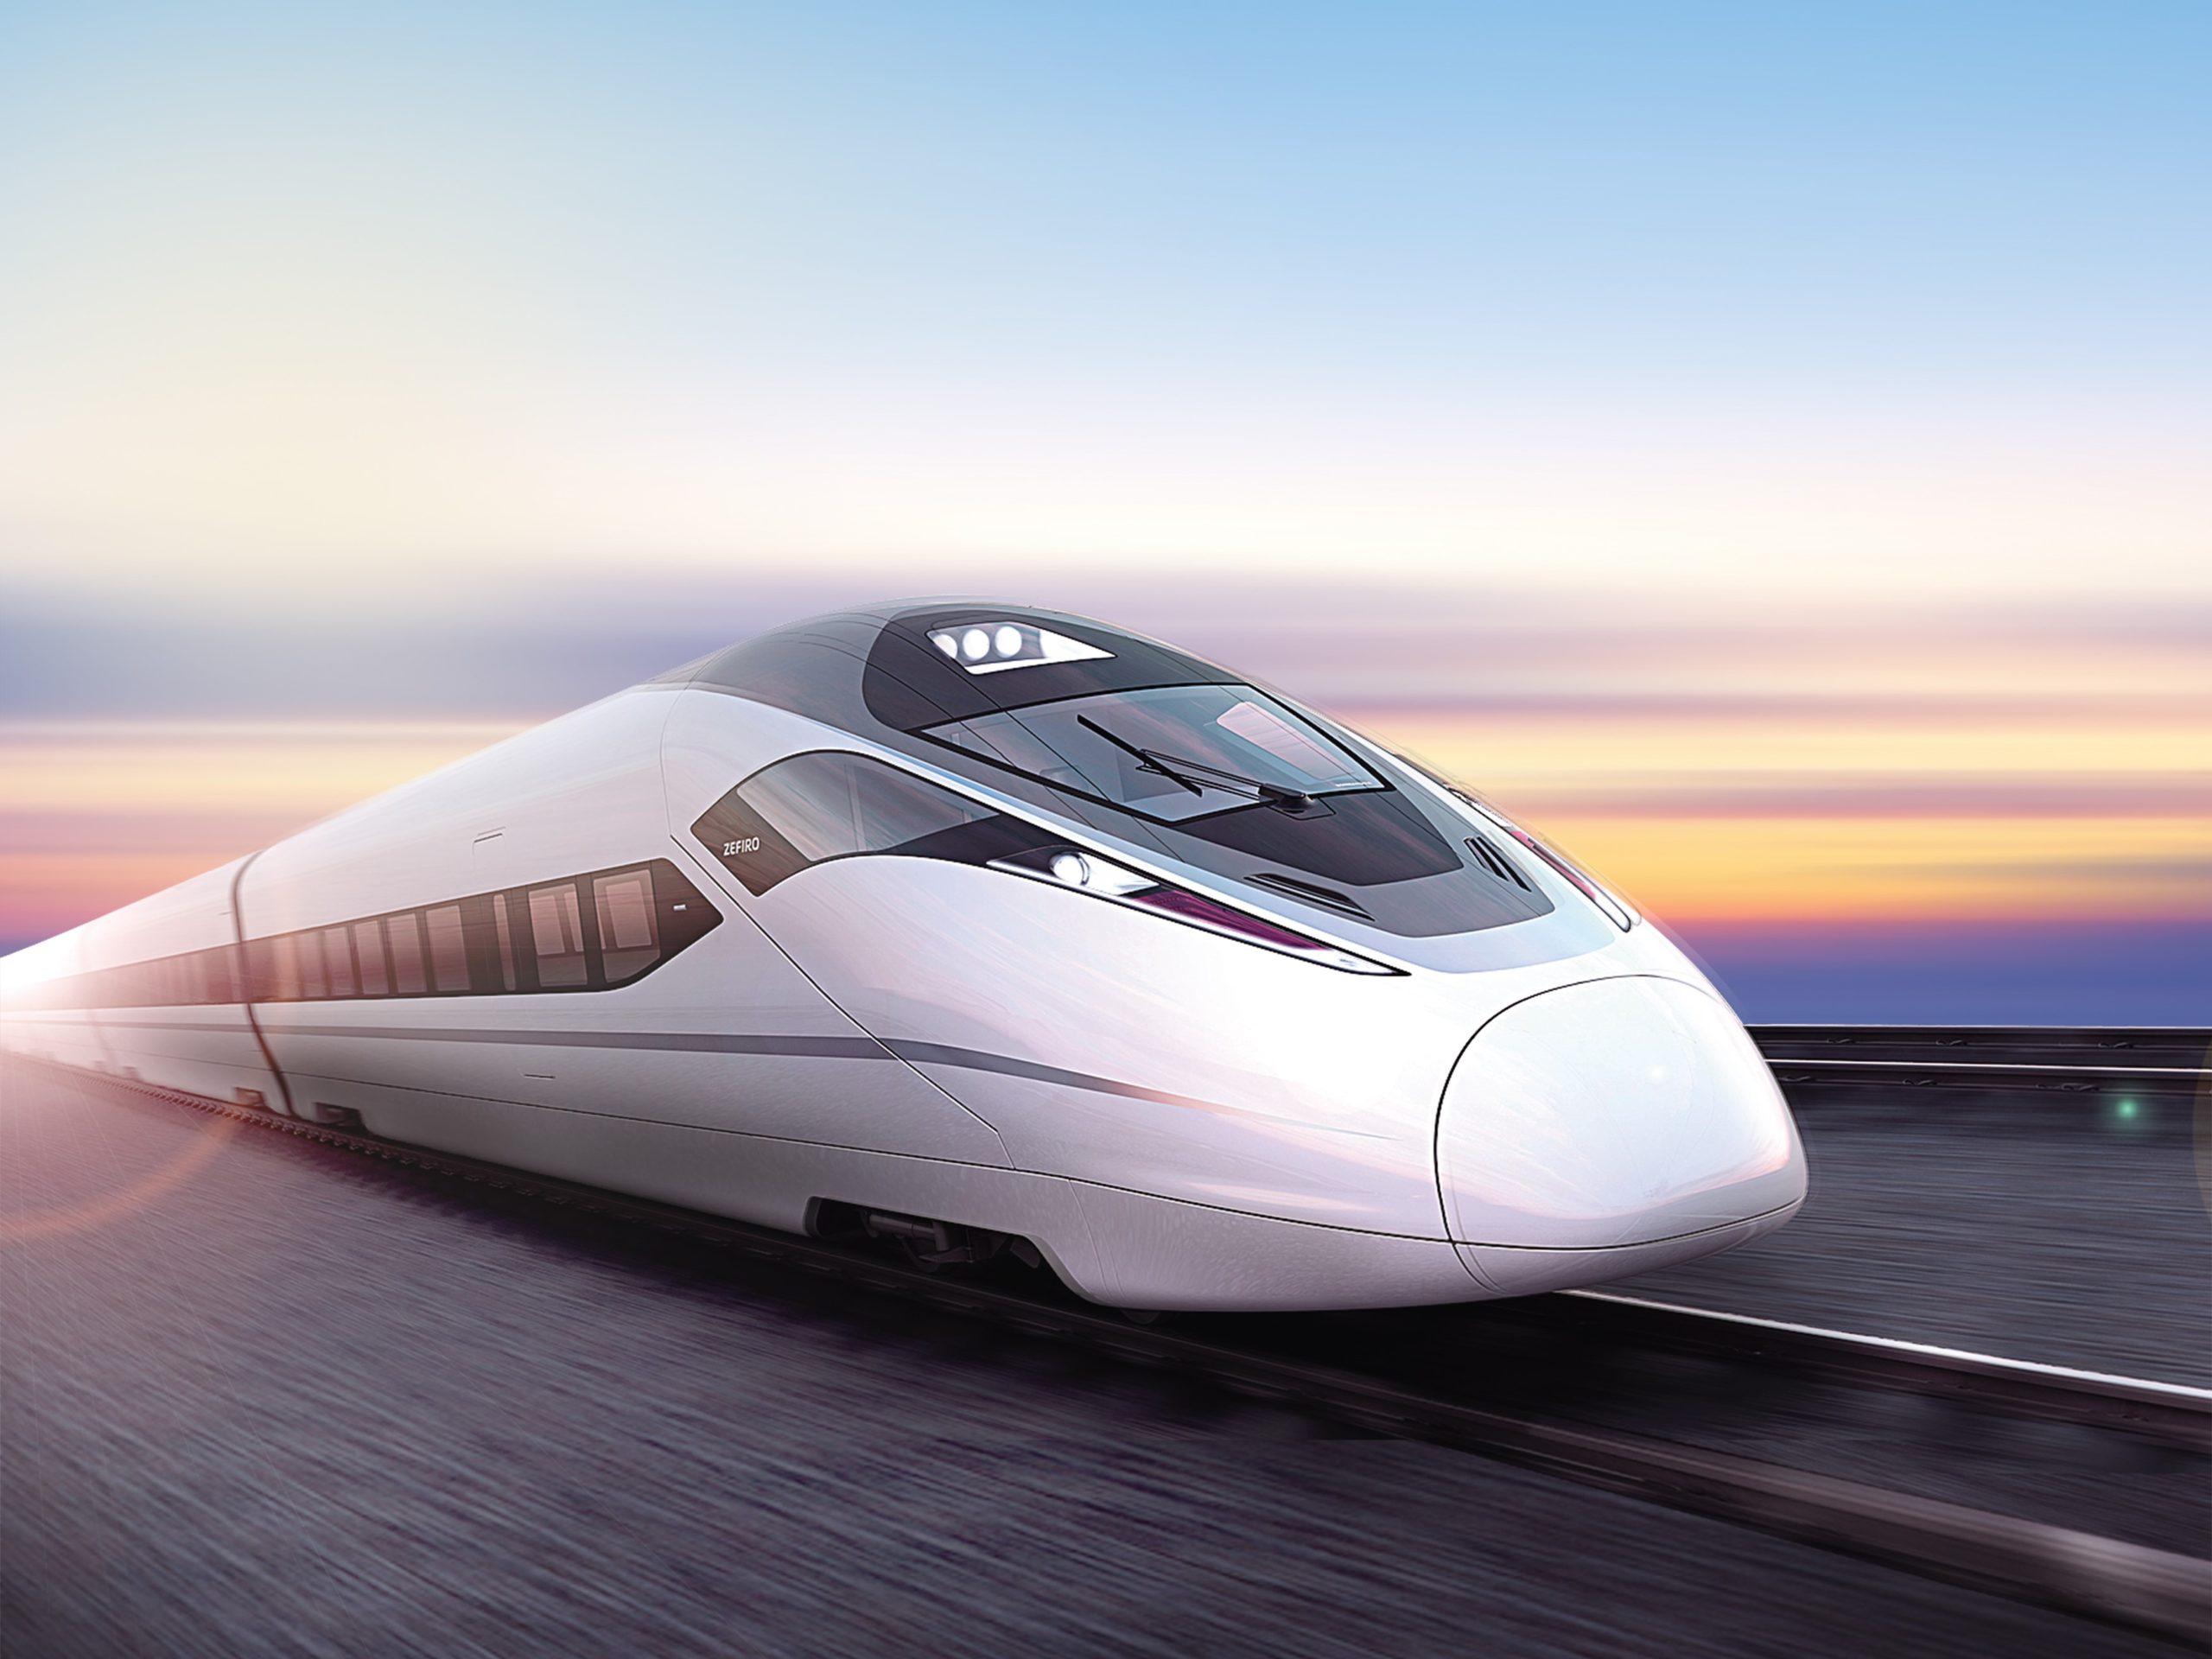 รถไฟความเร็วสูงของจีน (China Railway High-speed: CRH)